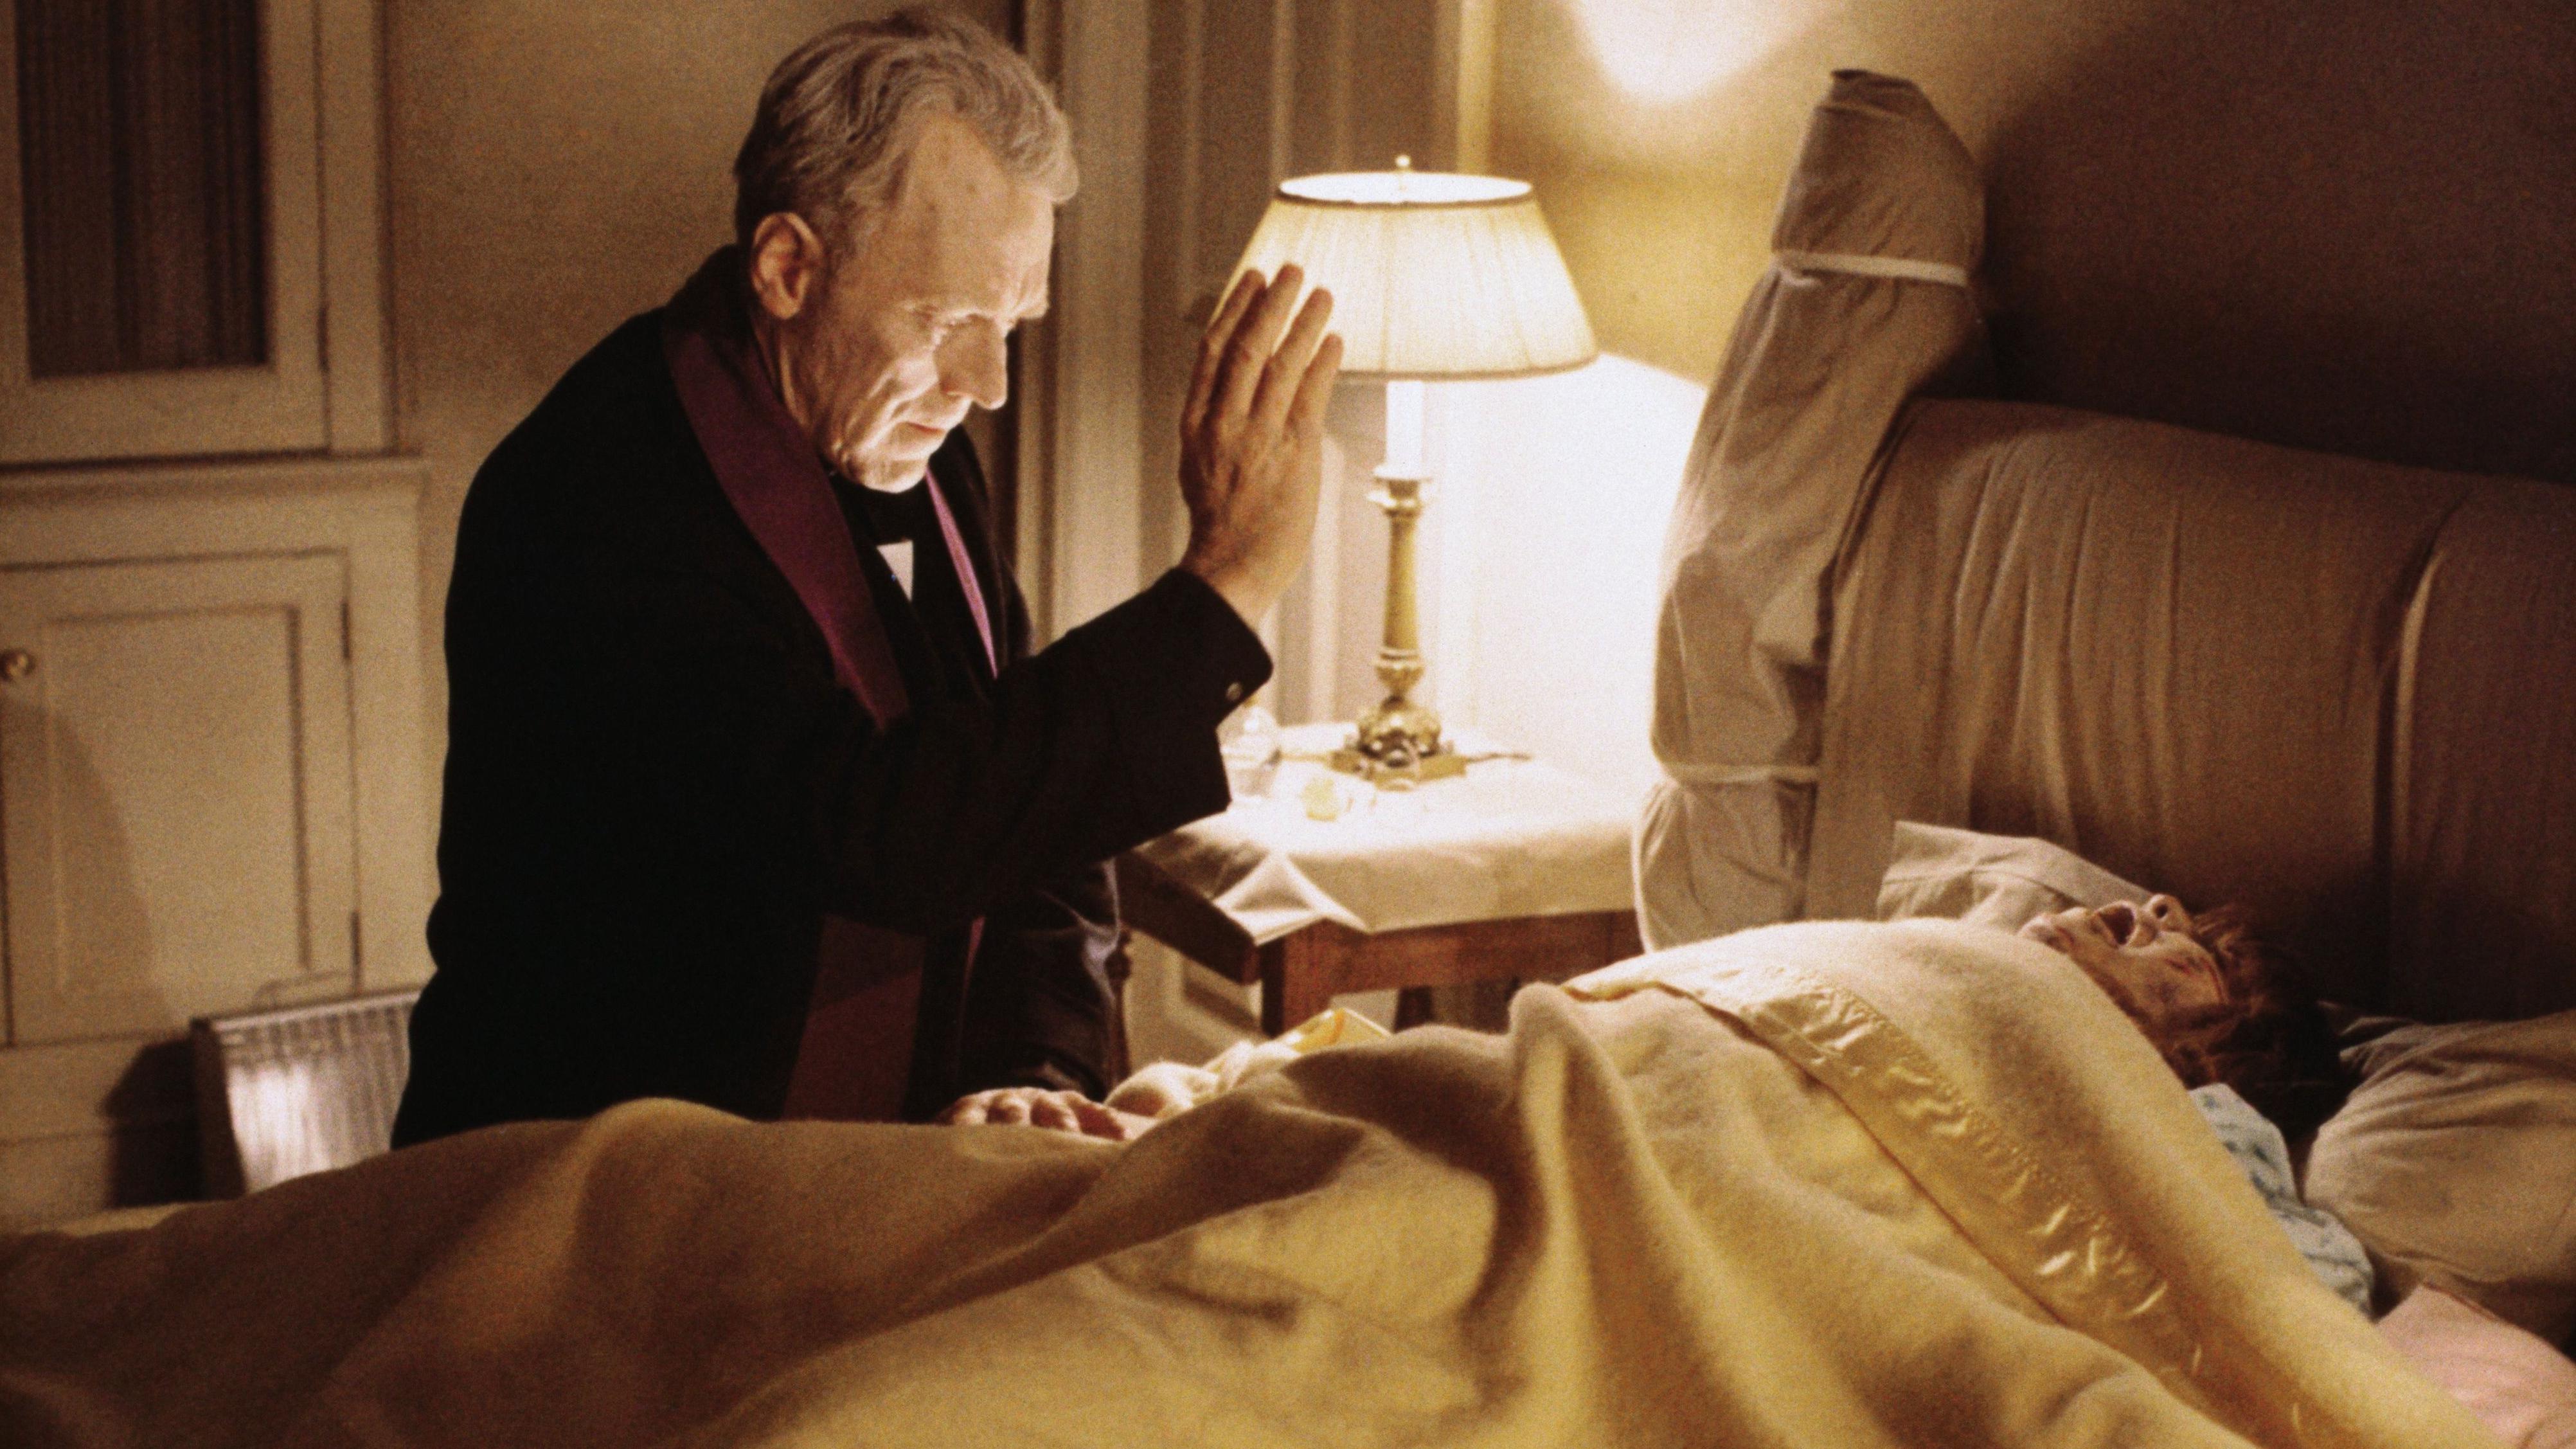 "El exorcista" fue el primer film de terror nominado al premio Oscar a la mejor película.

GETTY IMAGES
